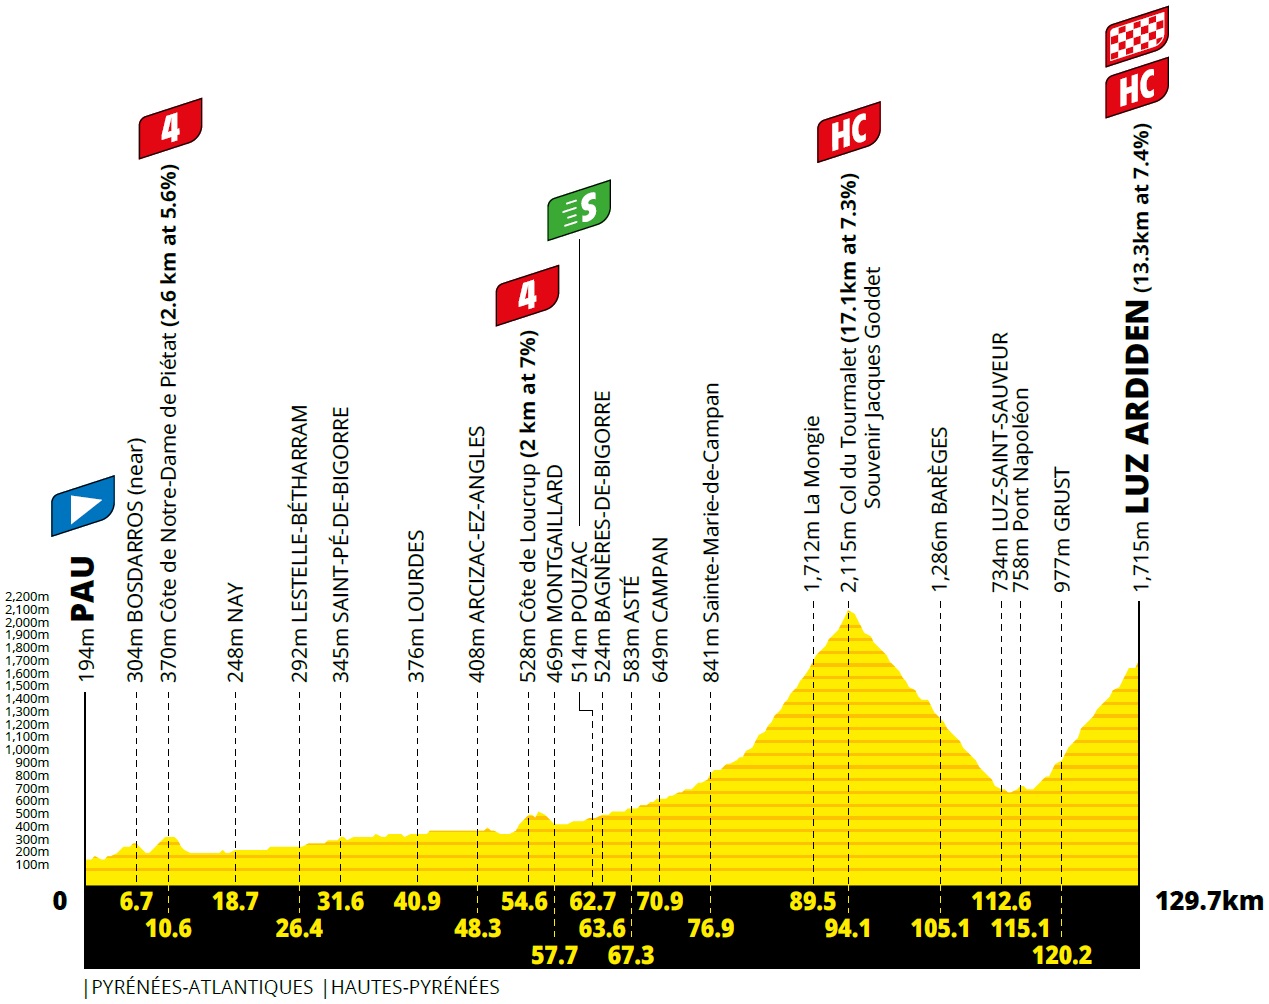 Vorschau & Favoriten Tour de France 2021 - Etappe 18